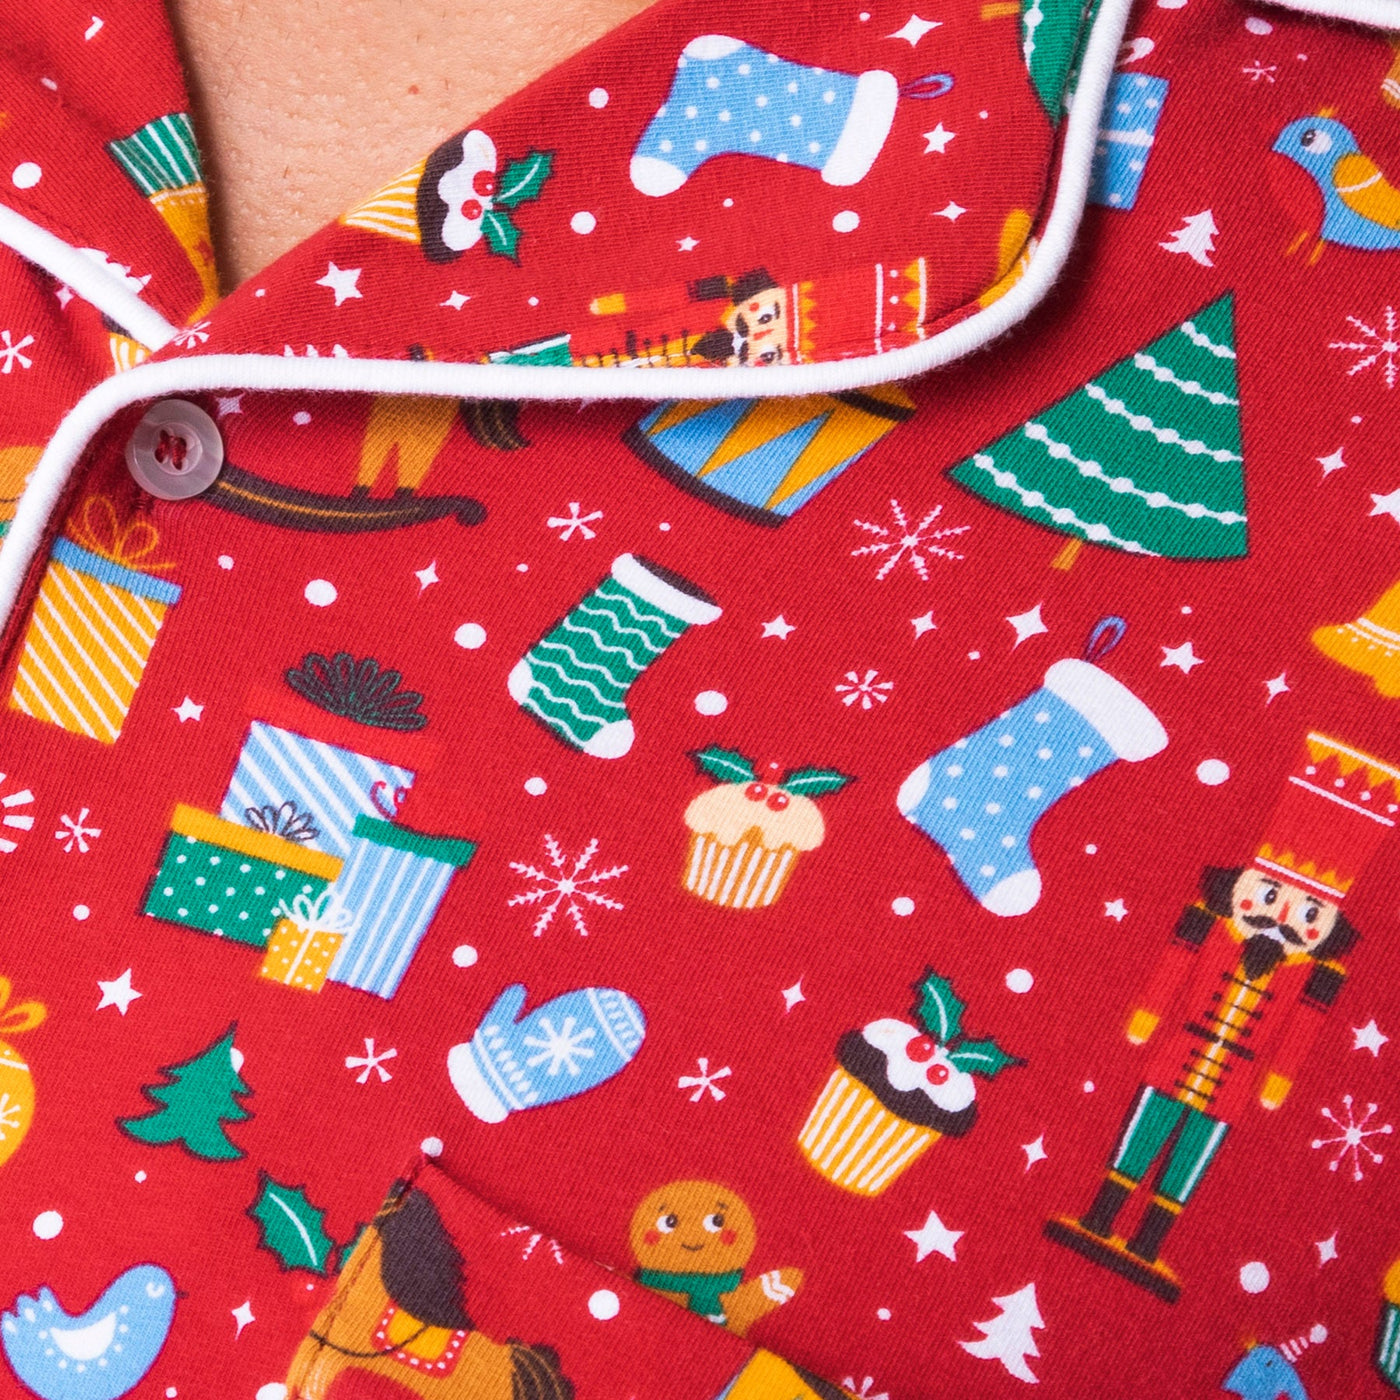 Kids' Red Christmas Dream Collared Christmas Pyjamas